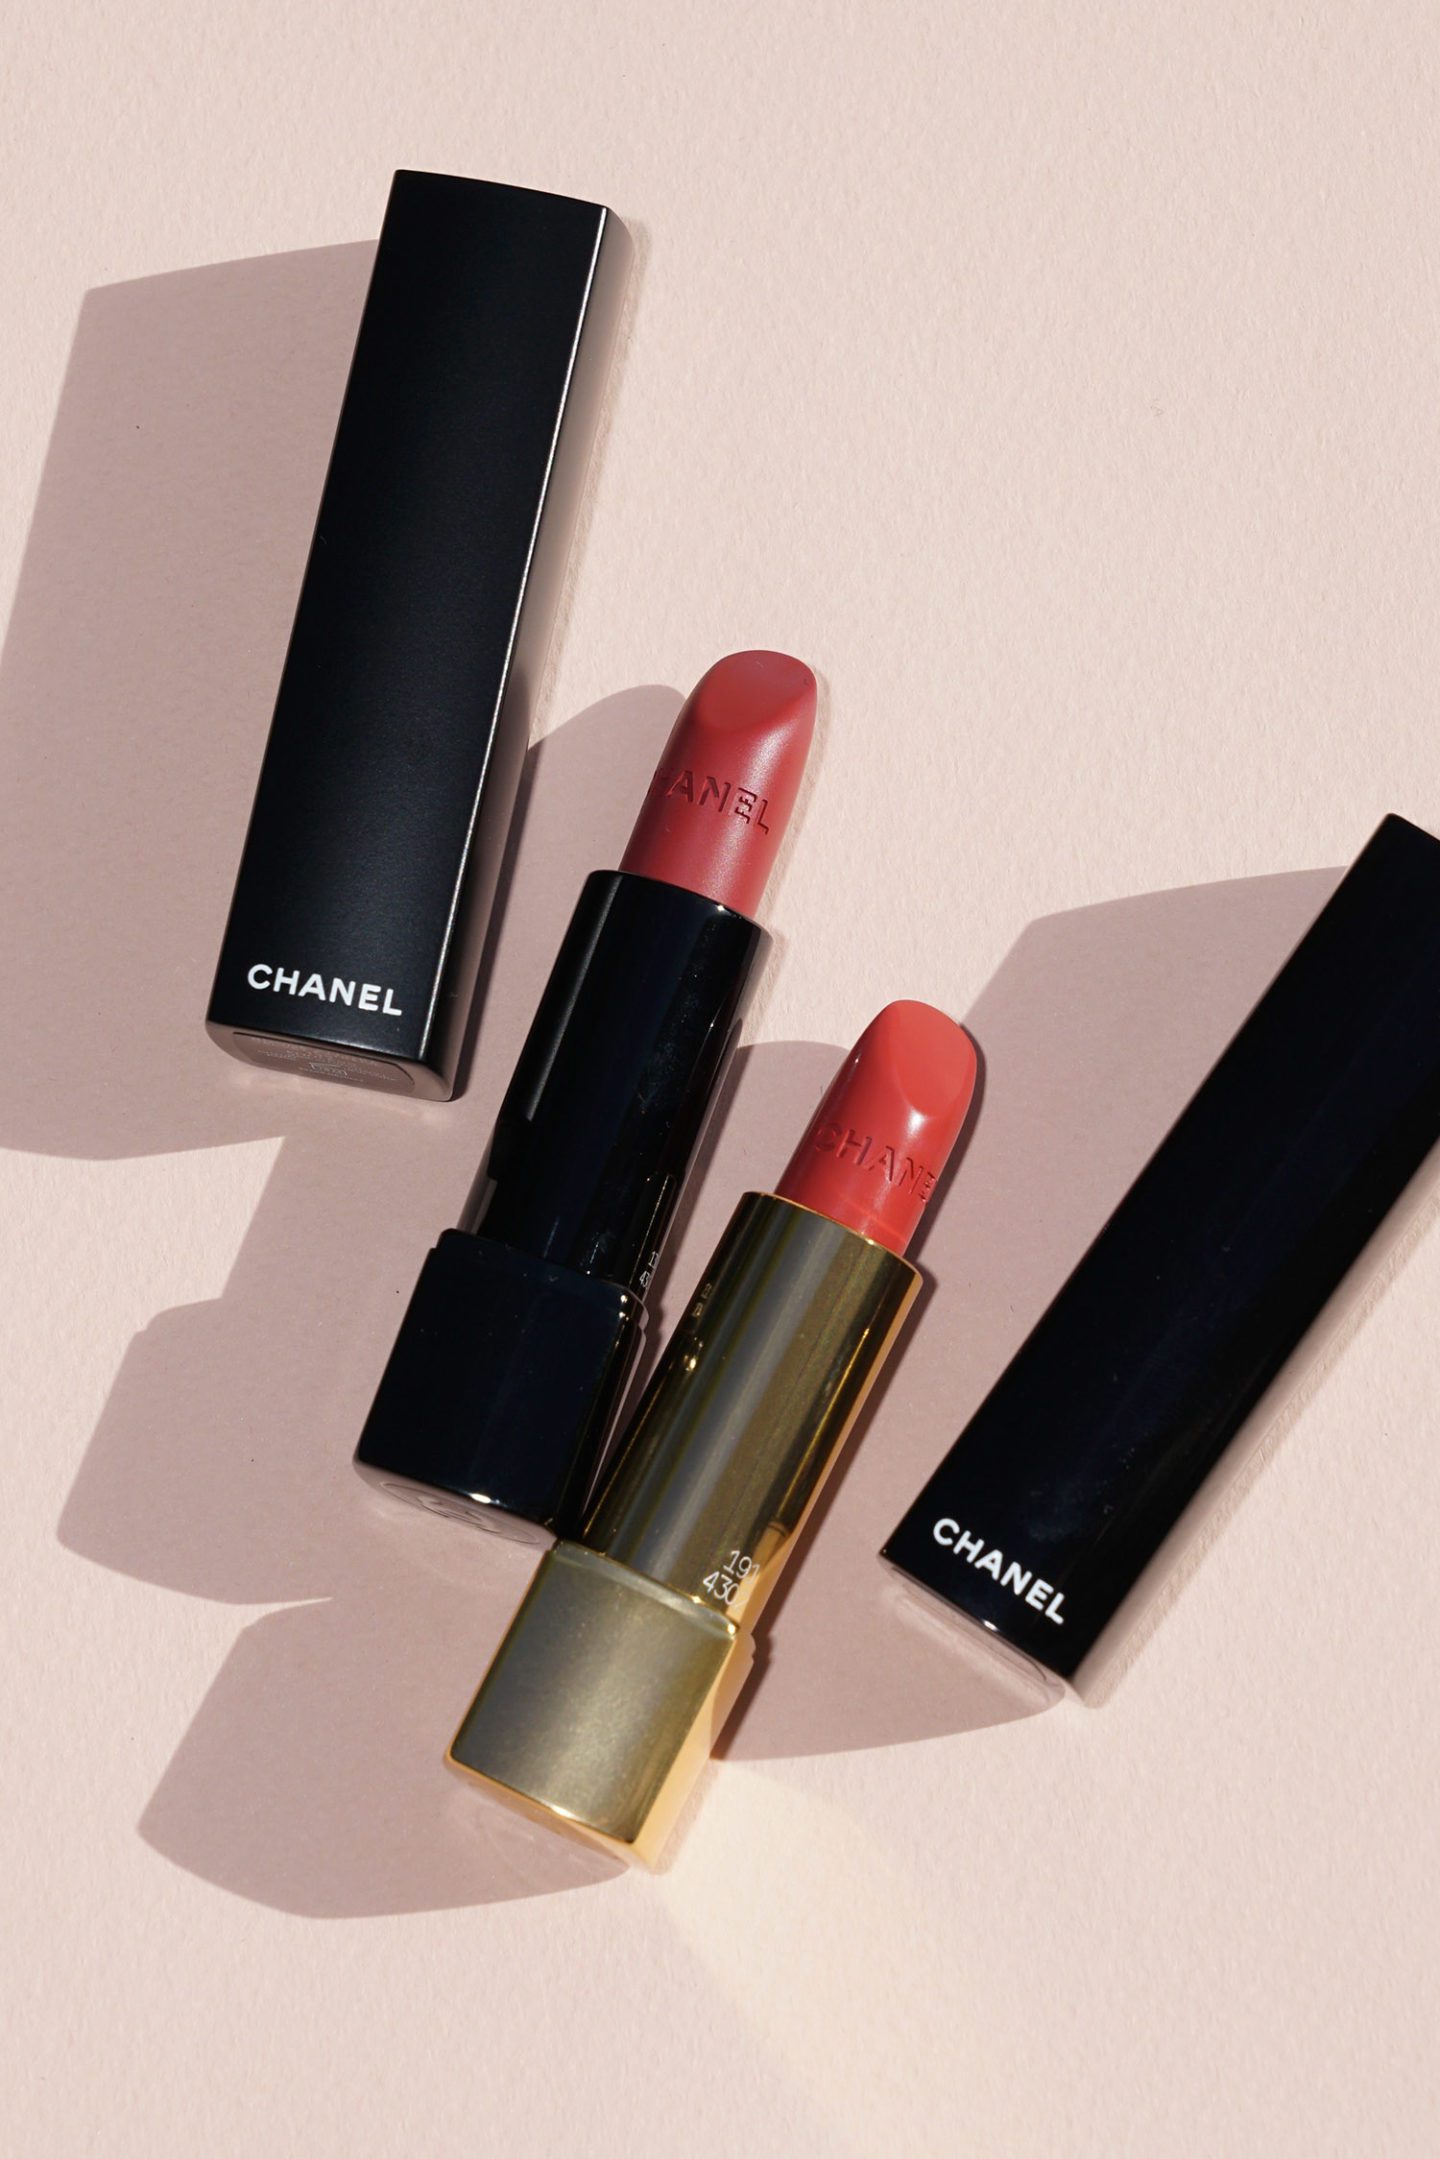 Chanel Spring 2020 Lipsticks